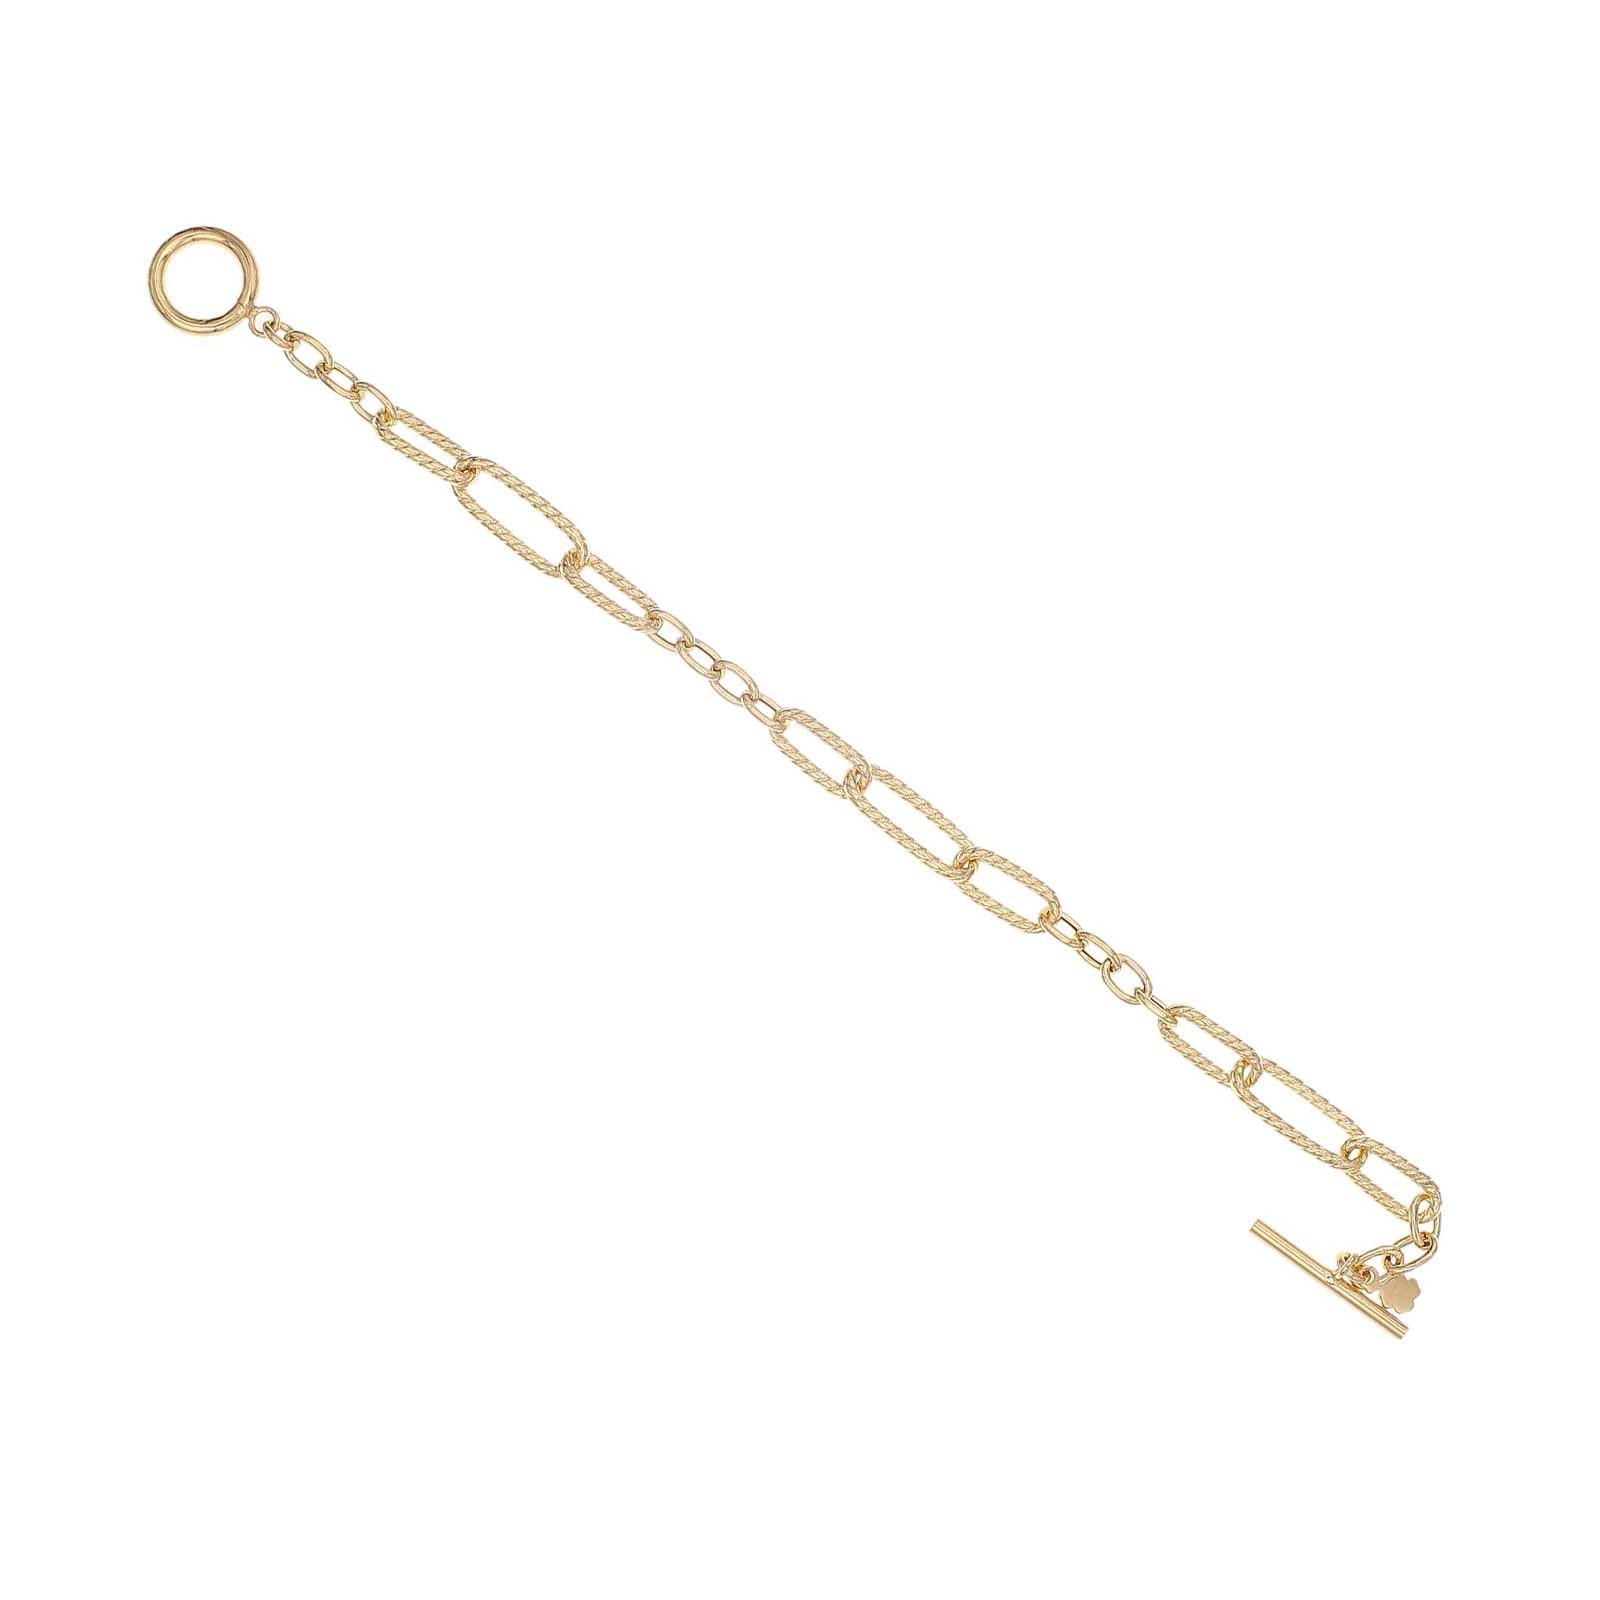 Silver Pin bracelet